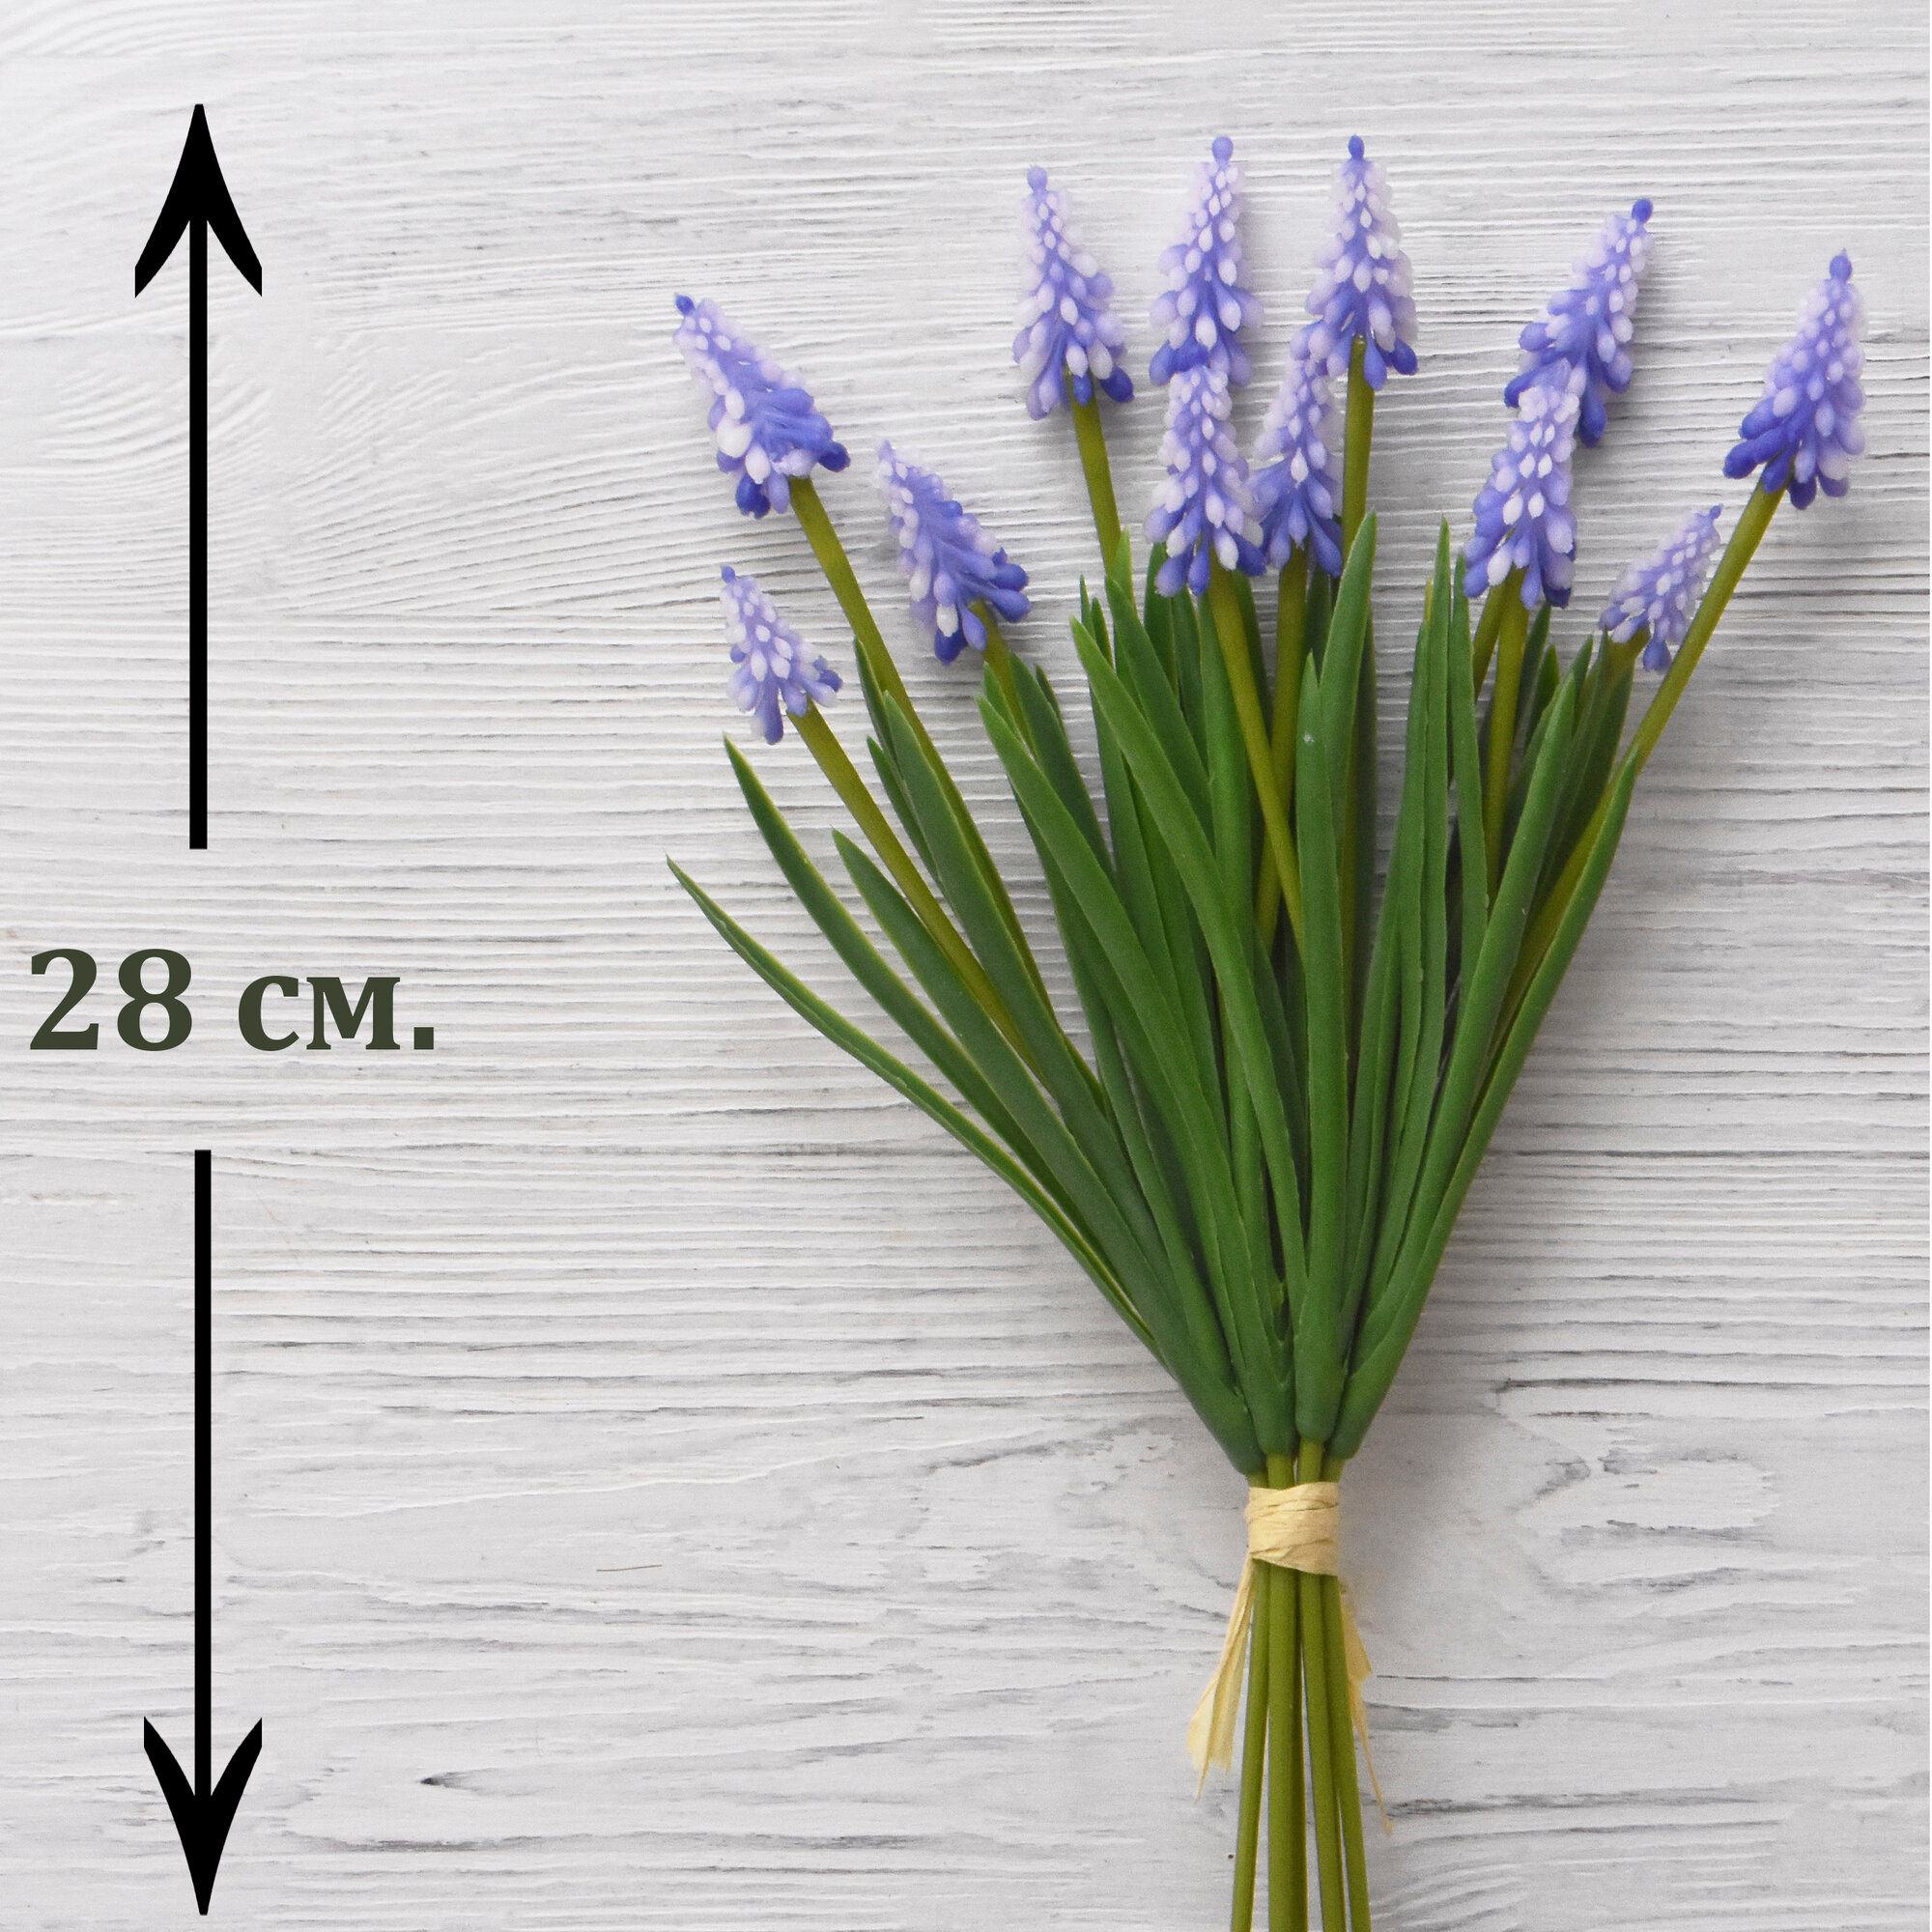 Мускари из силикона Бело-фиолетовые (12 соцветий) / Реалистичный искусственный цветок / Мускари из латекса